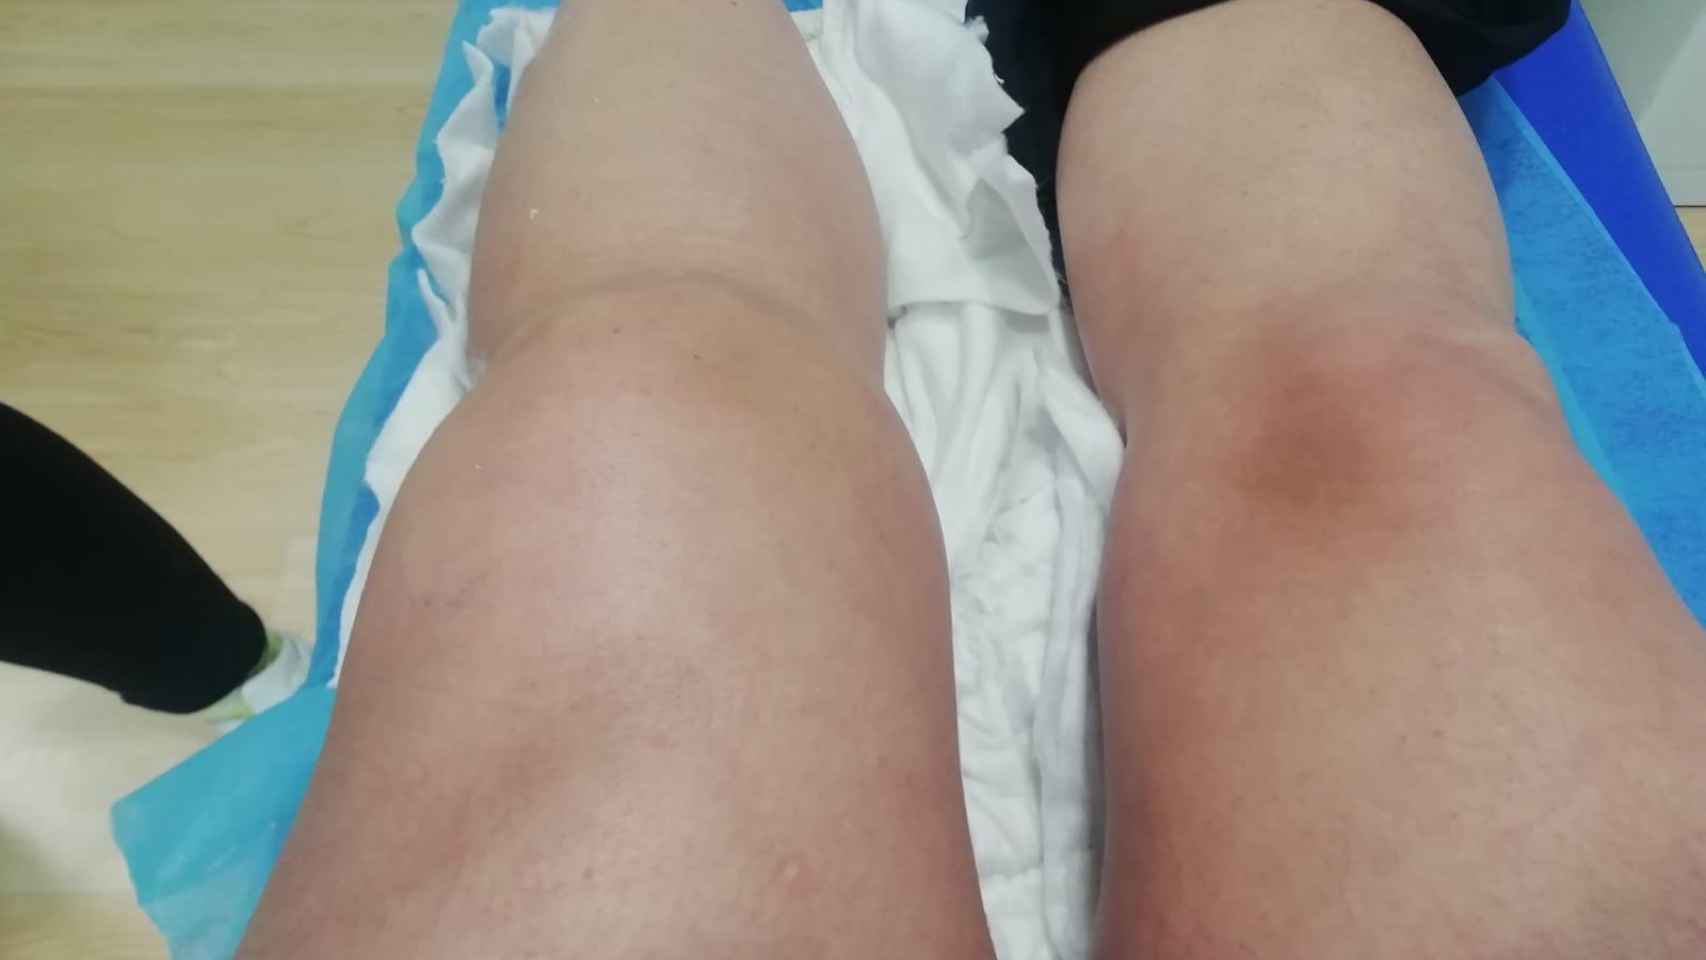 Los médicos del Hospital San Cecilio de Granada aguardaron varios meses para operar a la paciente porque tenía la rodilla inflamada.